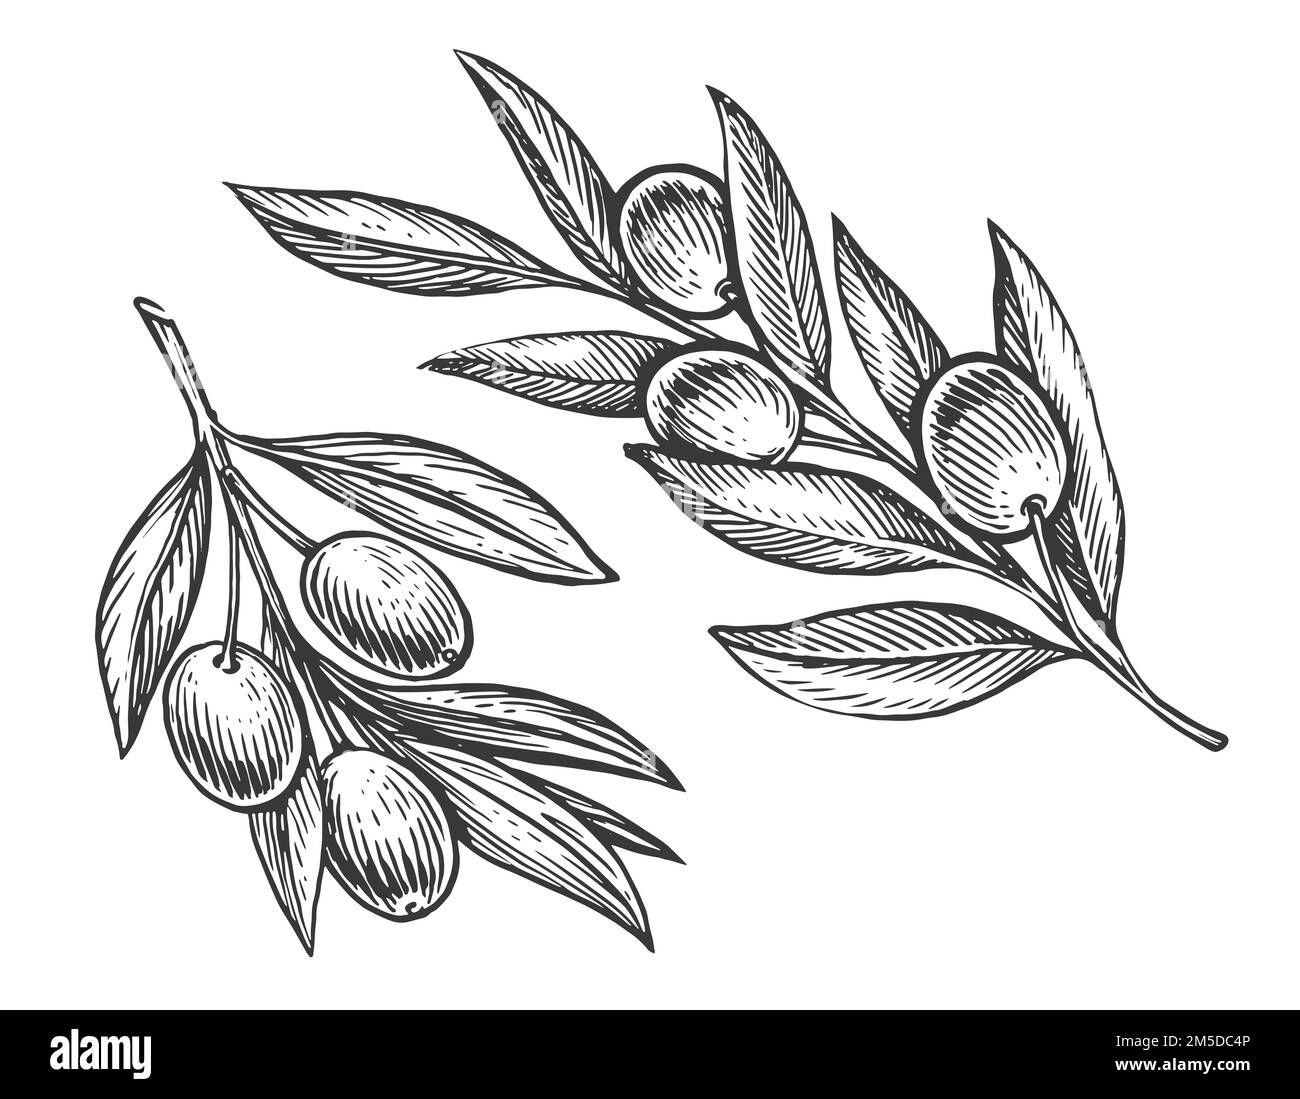 Branche d'olivier avec feuilles et olives. Nourriture de ferme naturelle bio extra vierge et saine. Croquis vintage gravé Banque D'Images